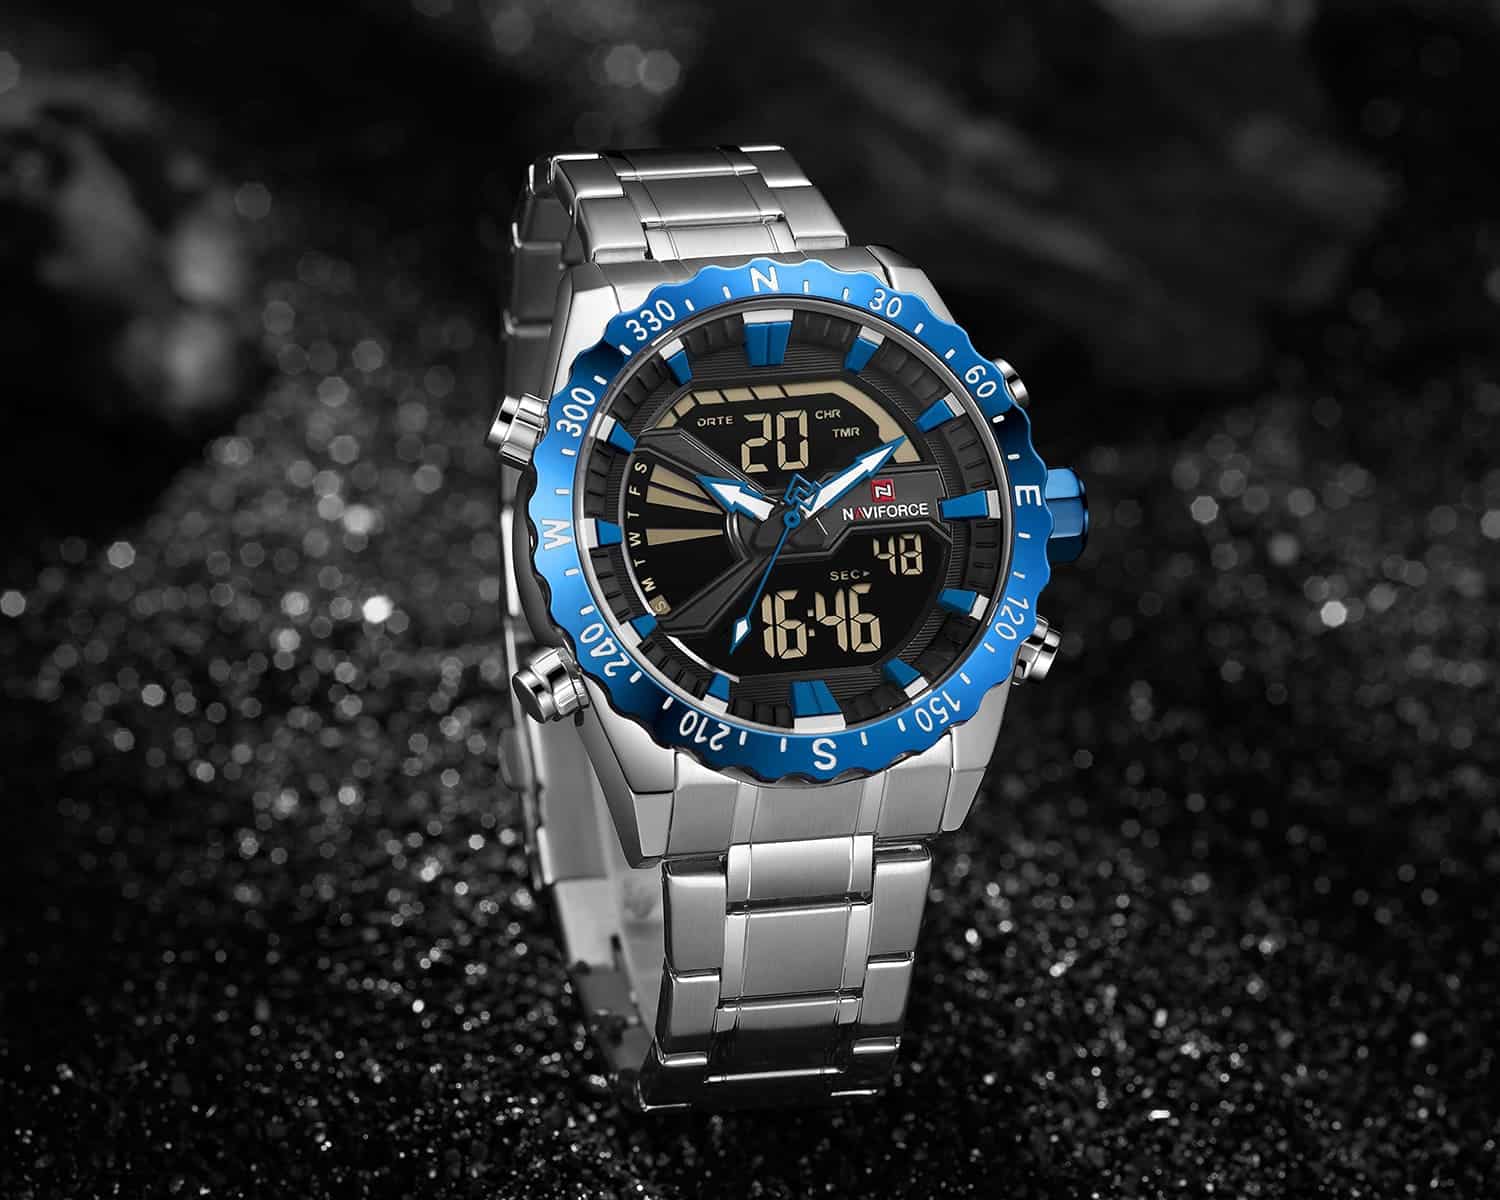 Naviforce Men's Watch NF9136S S BE S | Watches Prime